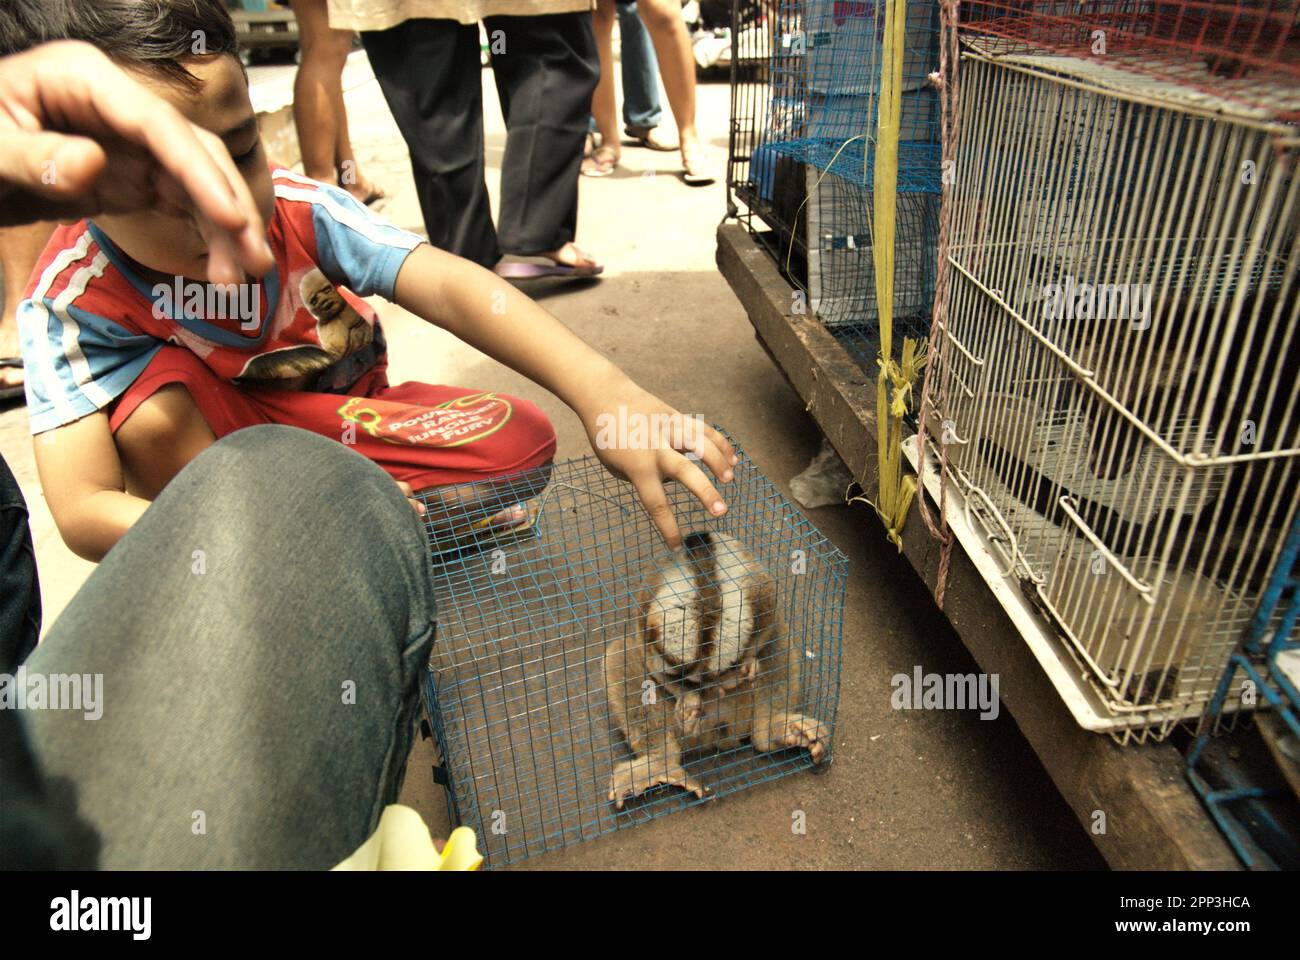 Un vendeur d'animaux en bord de route près d'un marché d'animaux qui vend également des espèces sauvages et des espèces protégées, y compris des loris lents (en photo), à Jatinegara, dans l'est de Jakarta, à Jakarta, en Indonésie. Malgré sa protection, les loris lents souffrent du commerce de la faune. Les primates nocturnes sont traités comme des animaux de compagnie sans avoir de caractéristiques pour survivre dans des milieux anthropiques. En outre, l'espèce est très populaire sur les médias sociaux. Banque D'Images